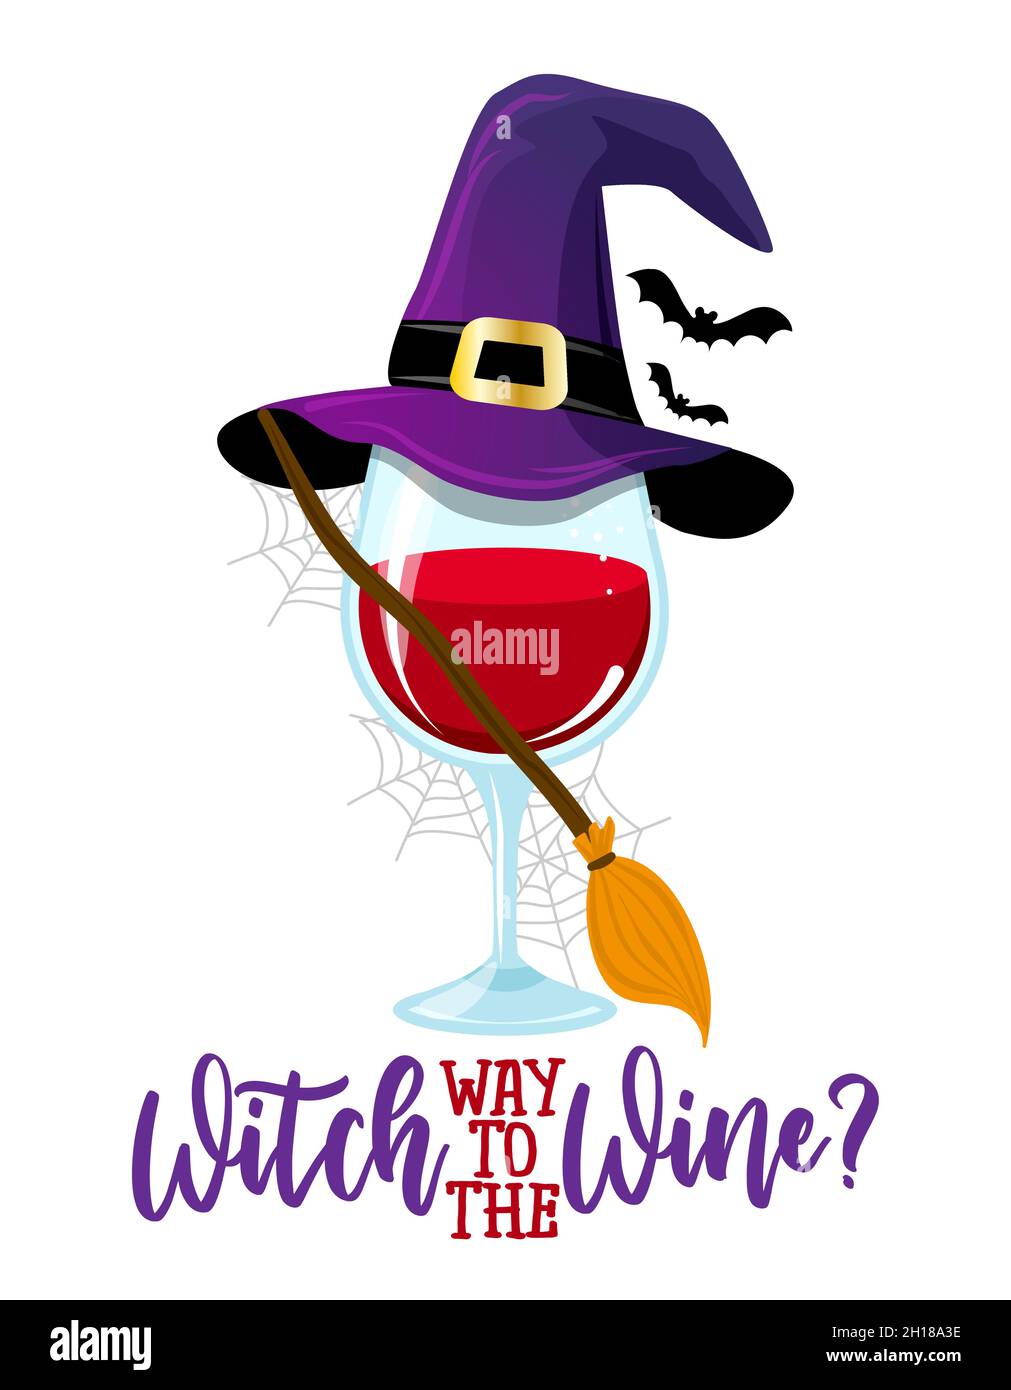 Witch Way to the Wine - Una copa de vino con traje de bruja. - vino tinto con sombrero de bruja, broomstick y murciélagos. Feliz decoración de Halloween. Mi bastón de broomstick Ilustración del Vector